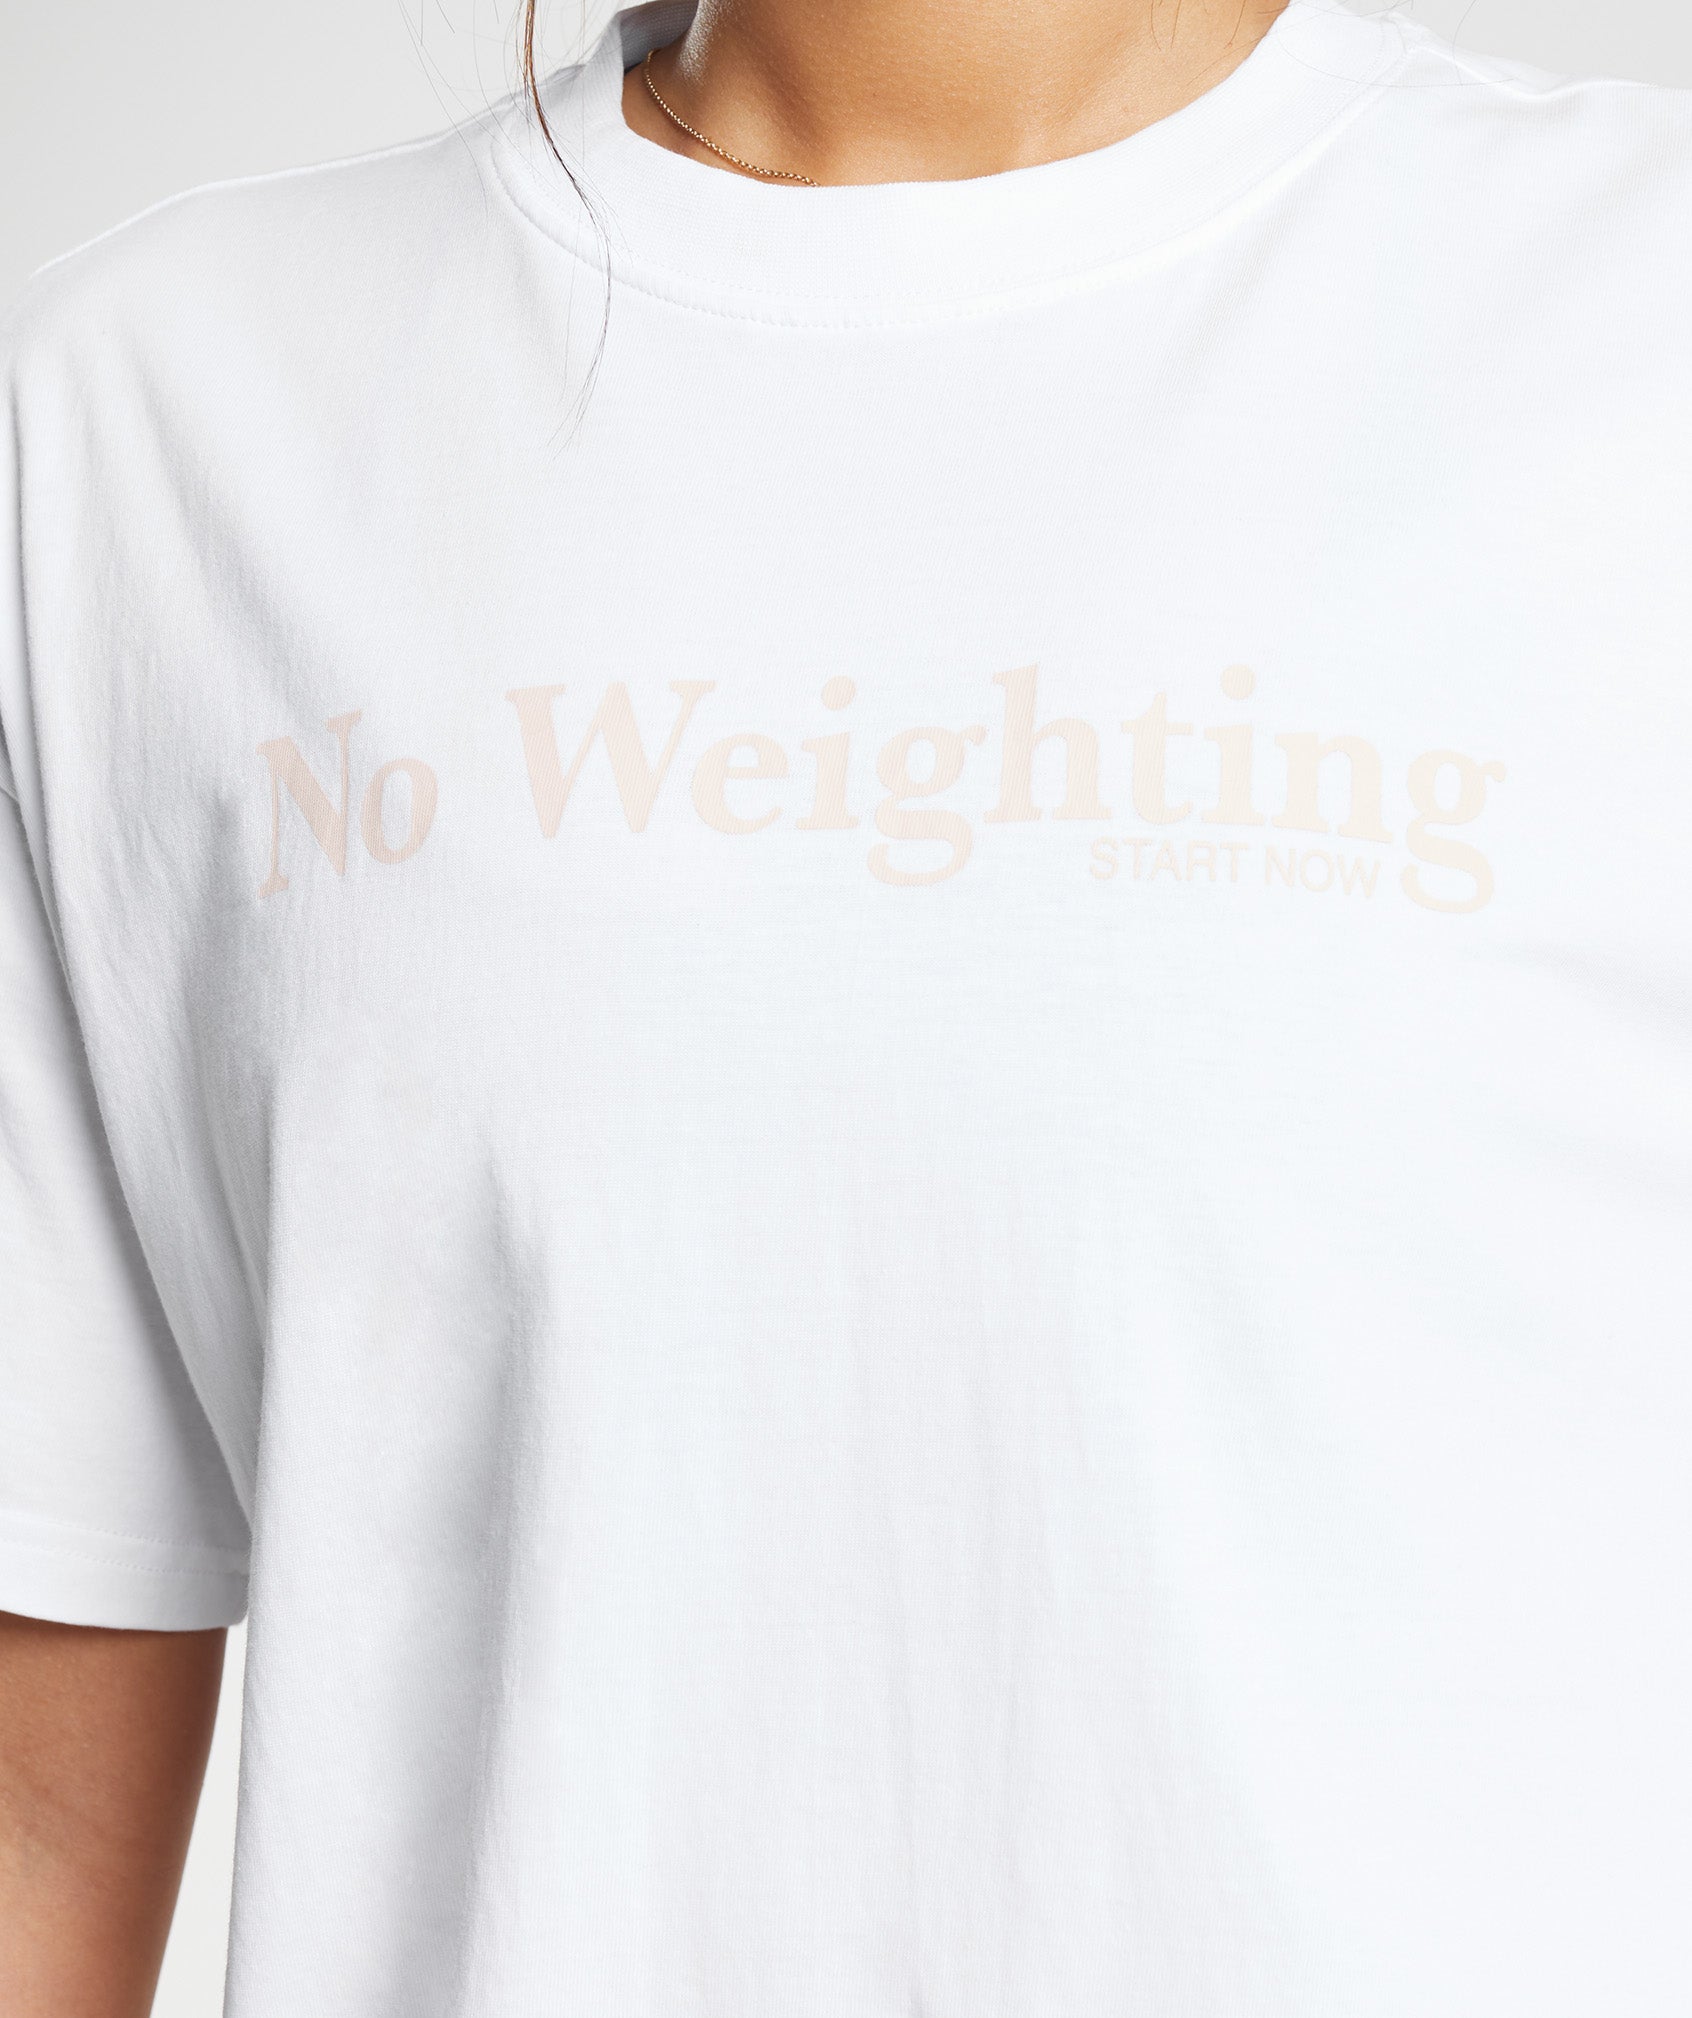 No Weighting Oversized T-Shirt in White